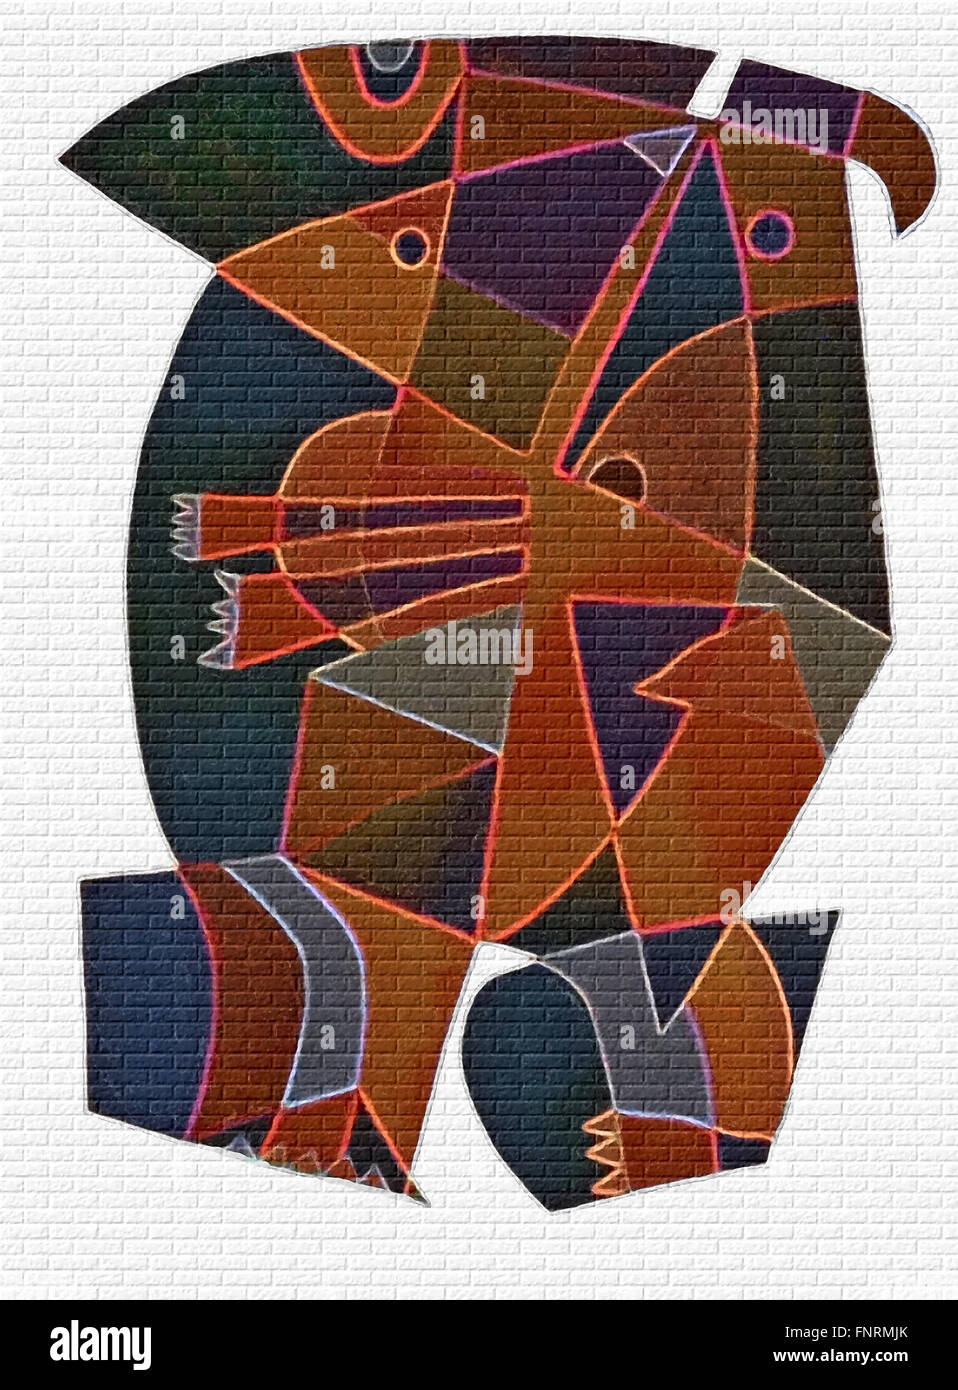 Des formes géométriques abstraites illustrant des états mentaux dans des couleurs sombres et fines lignes vives. Arrière-plan de mur en brique blanche. Banque D'Images